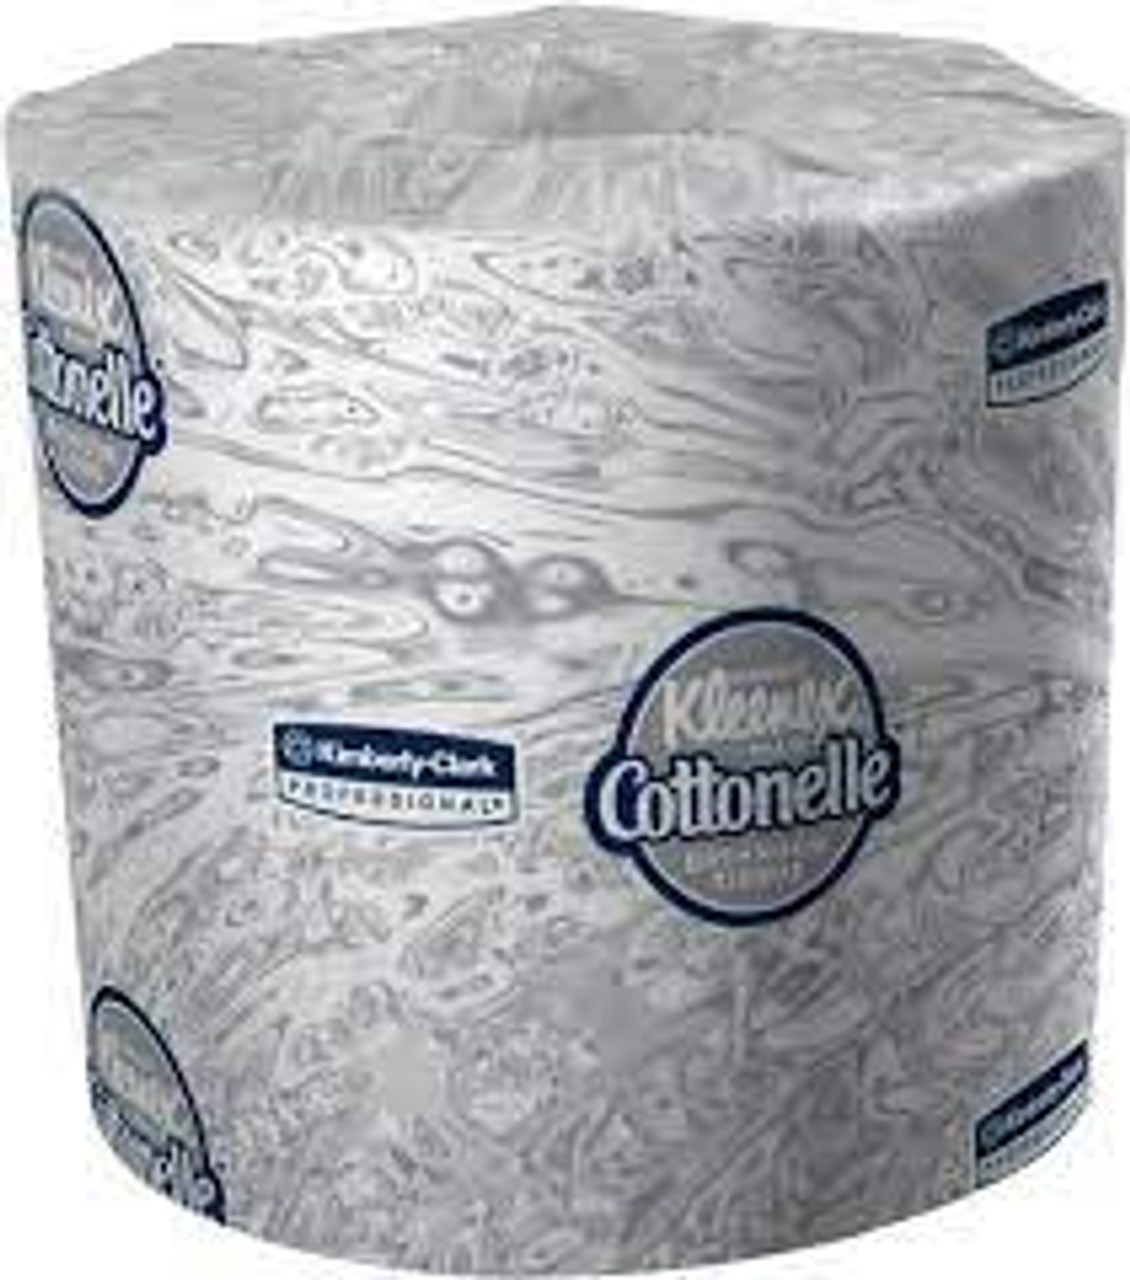 Papier toilette Kleenex Cottonelle, 2 plis, 451 feuilles par rouleau, longueur 150 pieds, blanc 17713